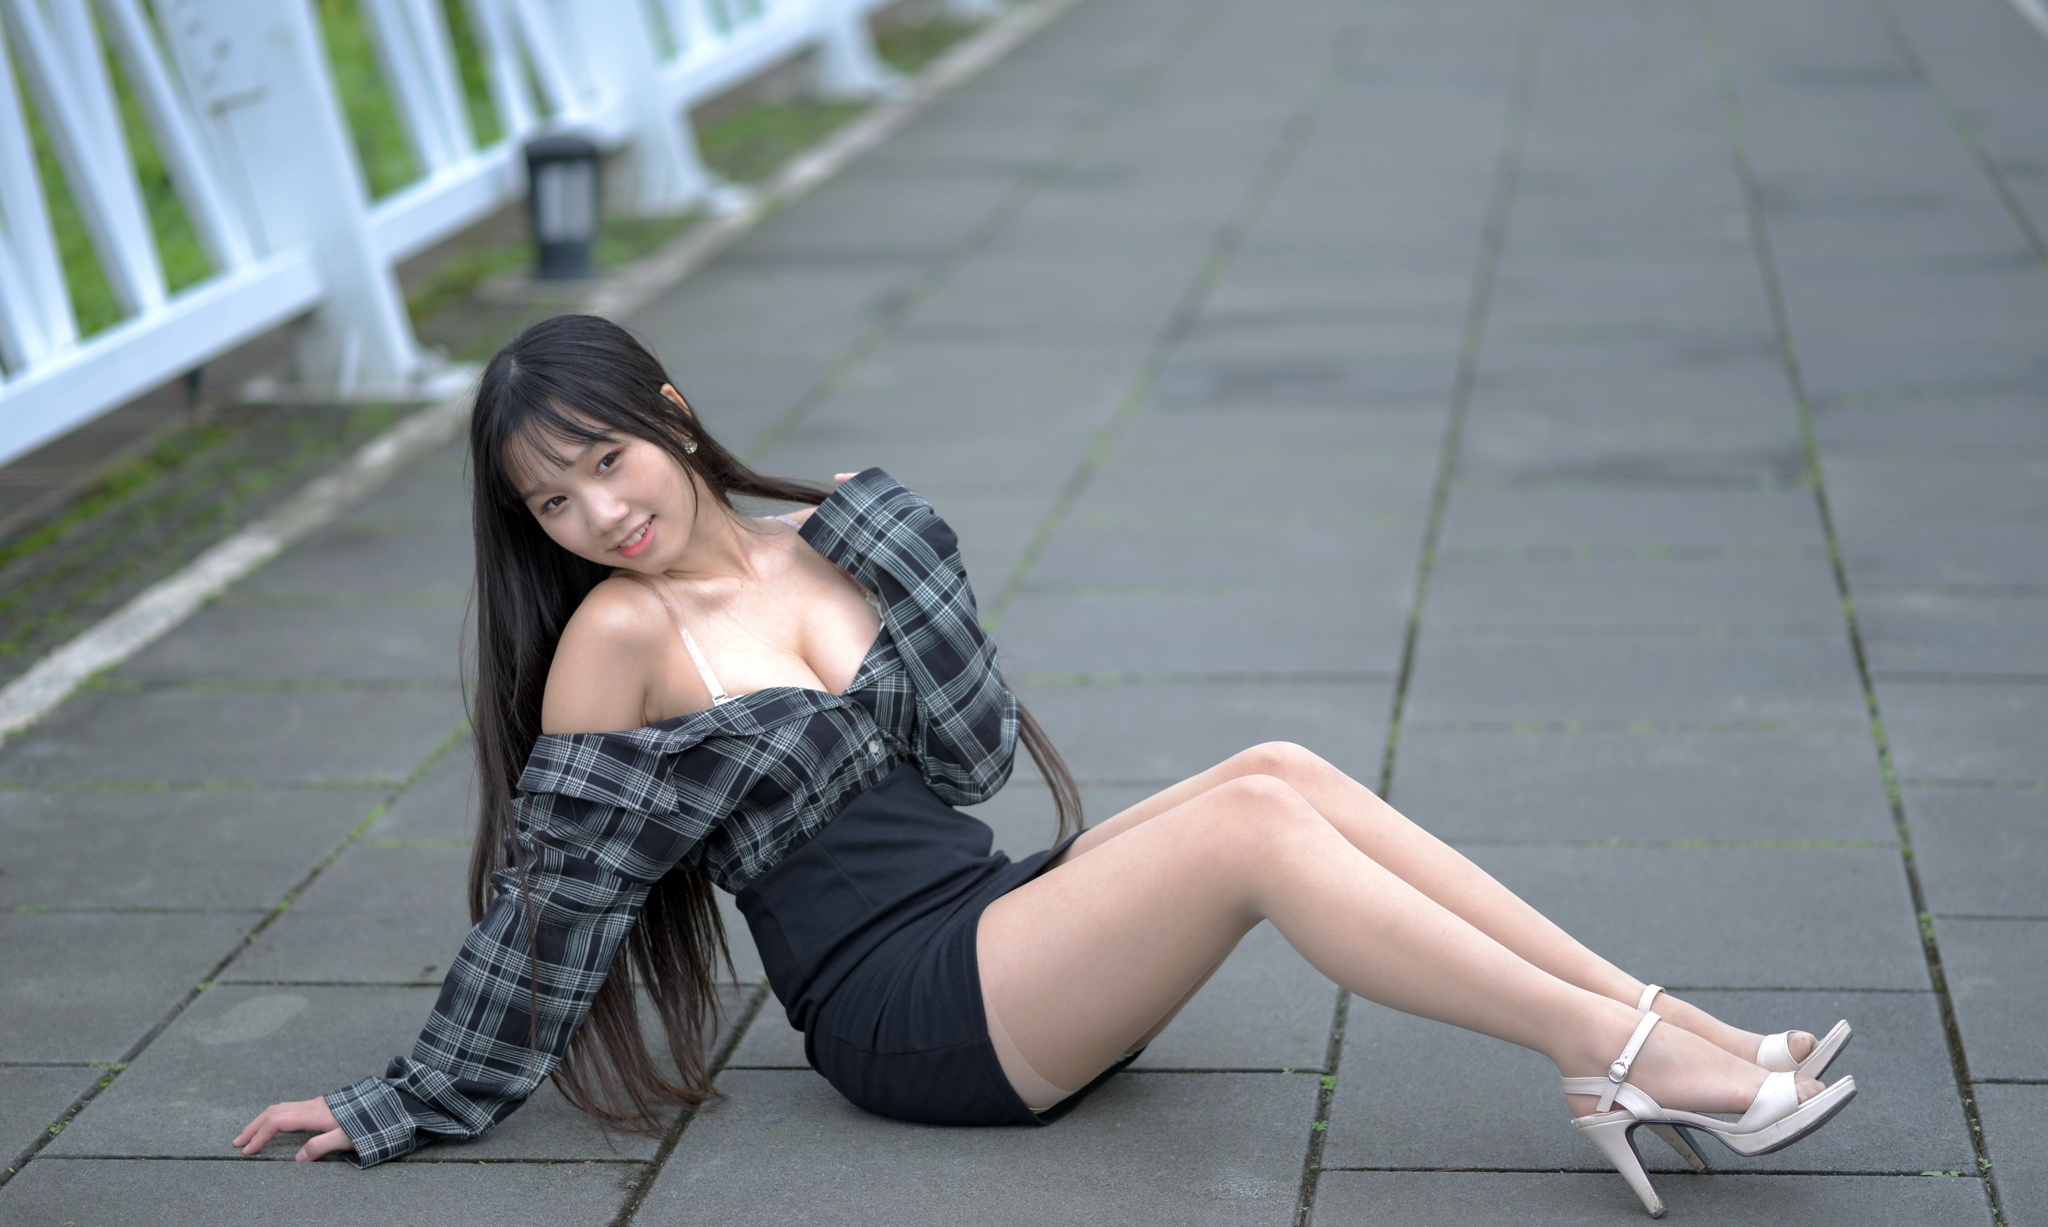 Asian Model Women Long Hair Dark Hair Sitting Depth Of Field White